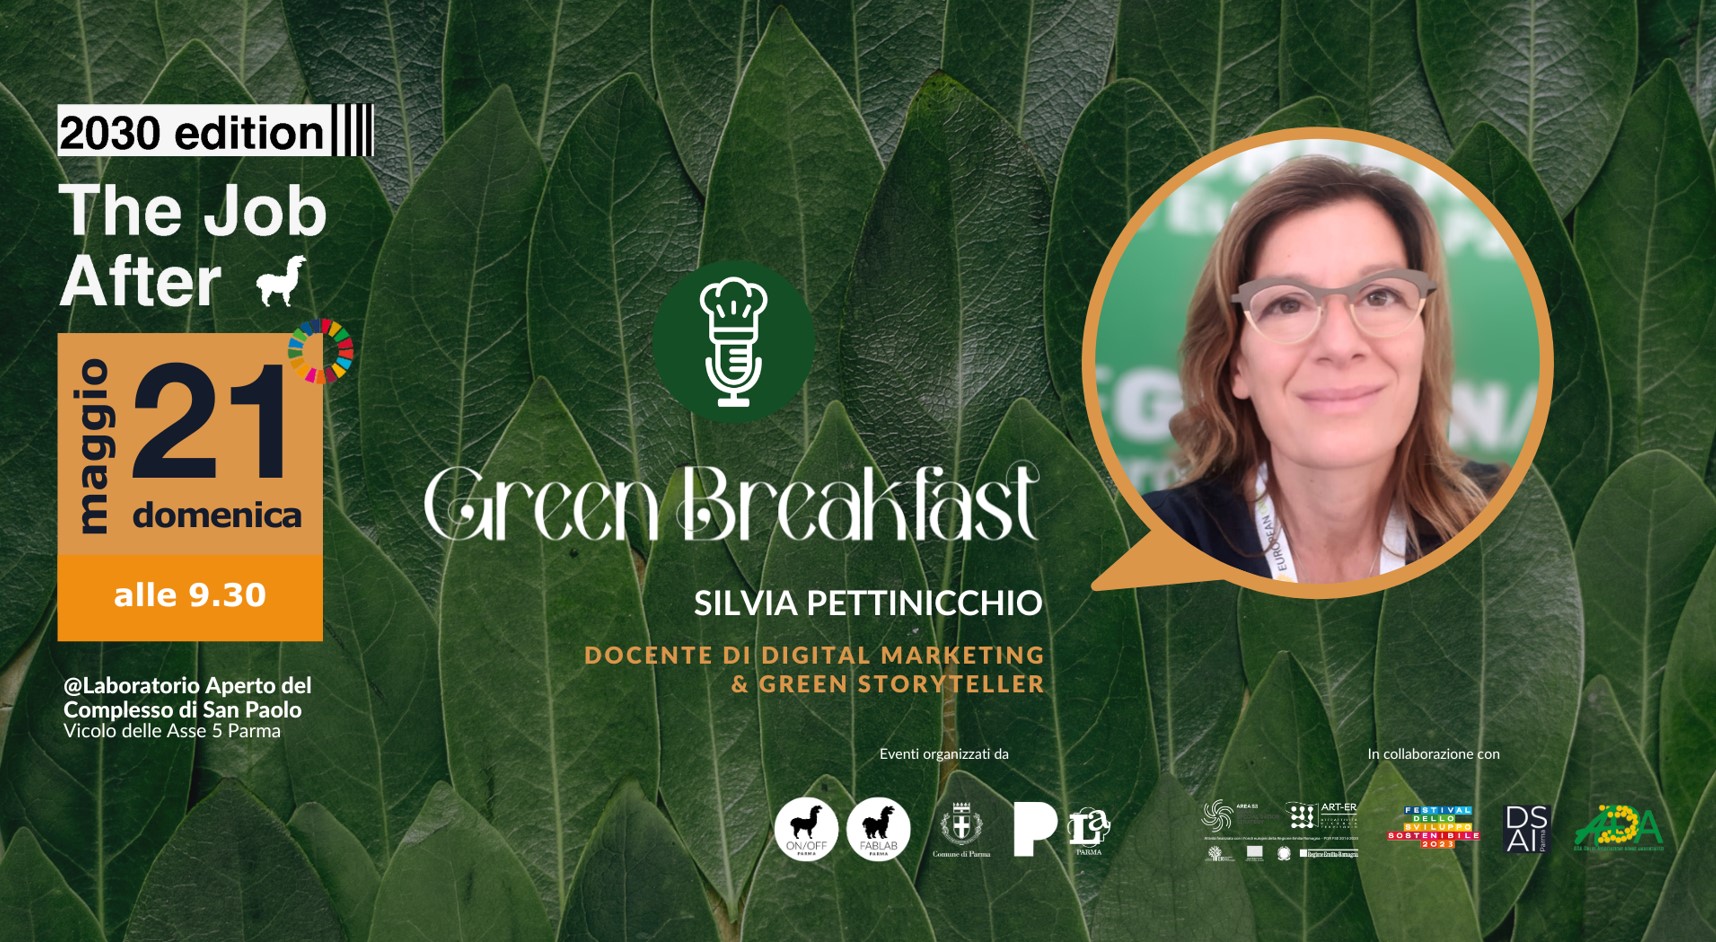 Green Breakfast con Silvia Pettinicchio, Docente di Digital Marketing